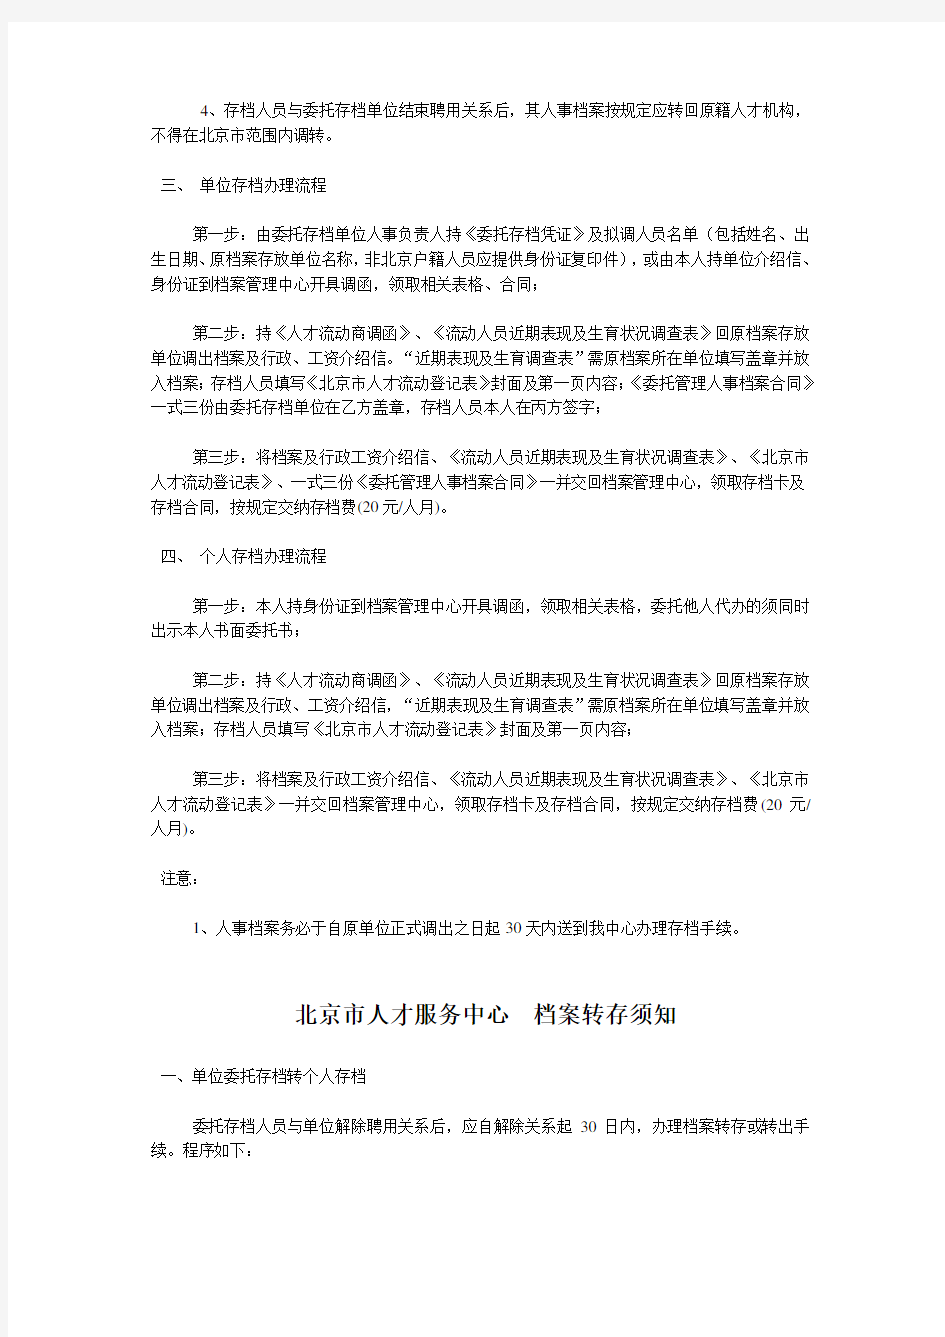 北京市人才服务中心 委托存档单位的管理办法